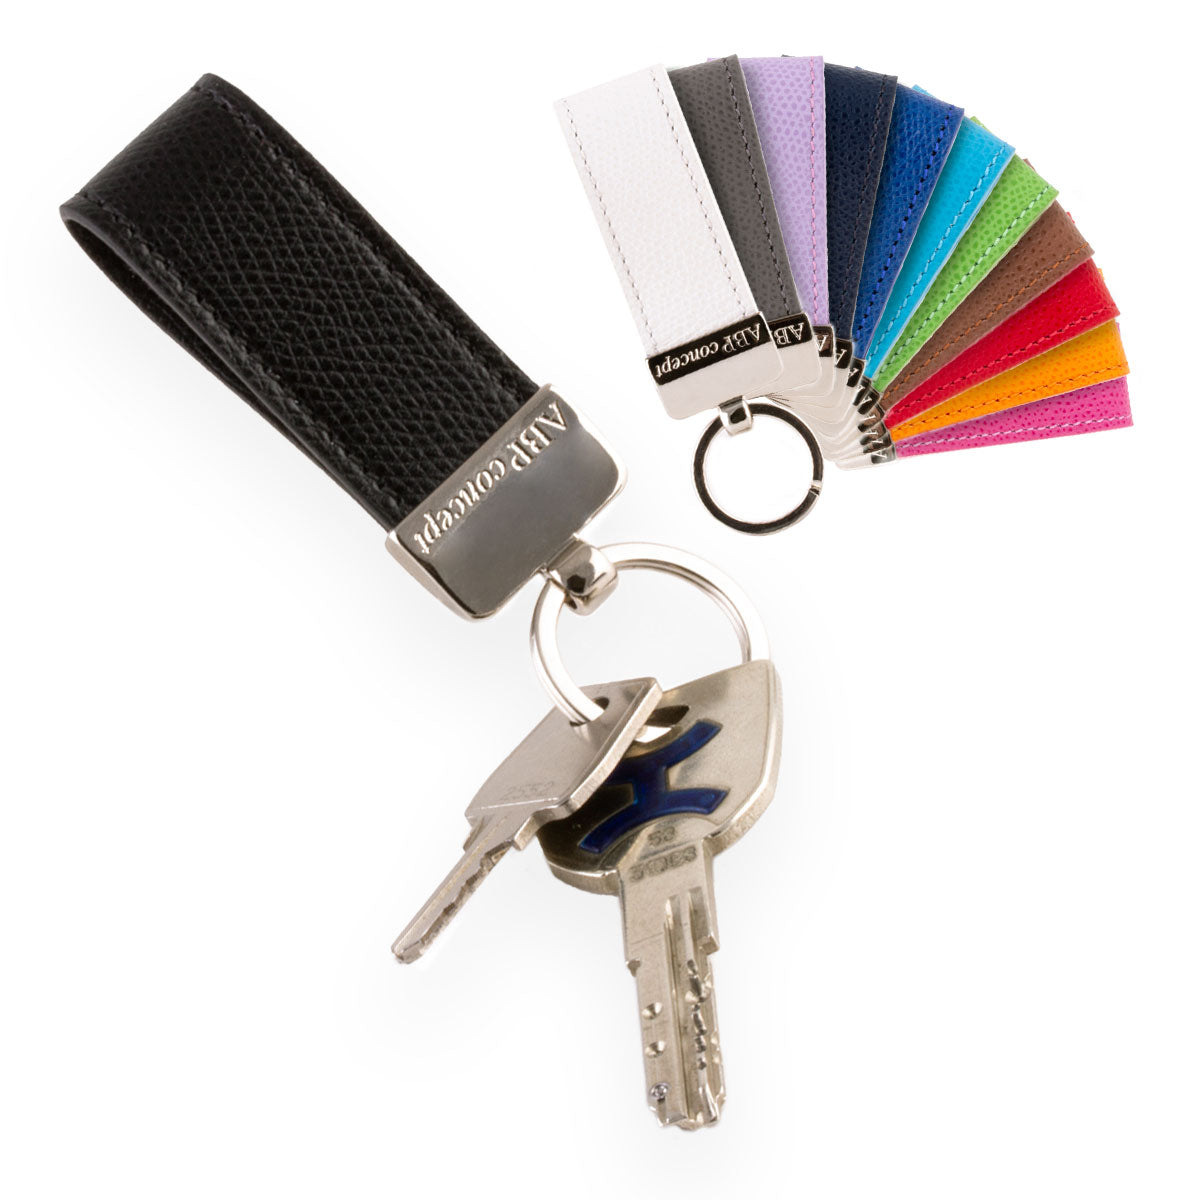 Porte-clés en cuir "Essential" - Veau grainé (noir, bleu, vert, marron, orange...)